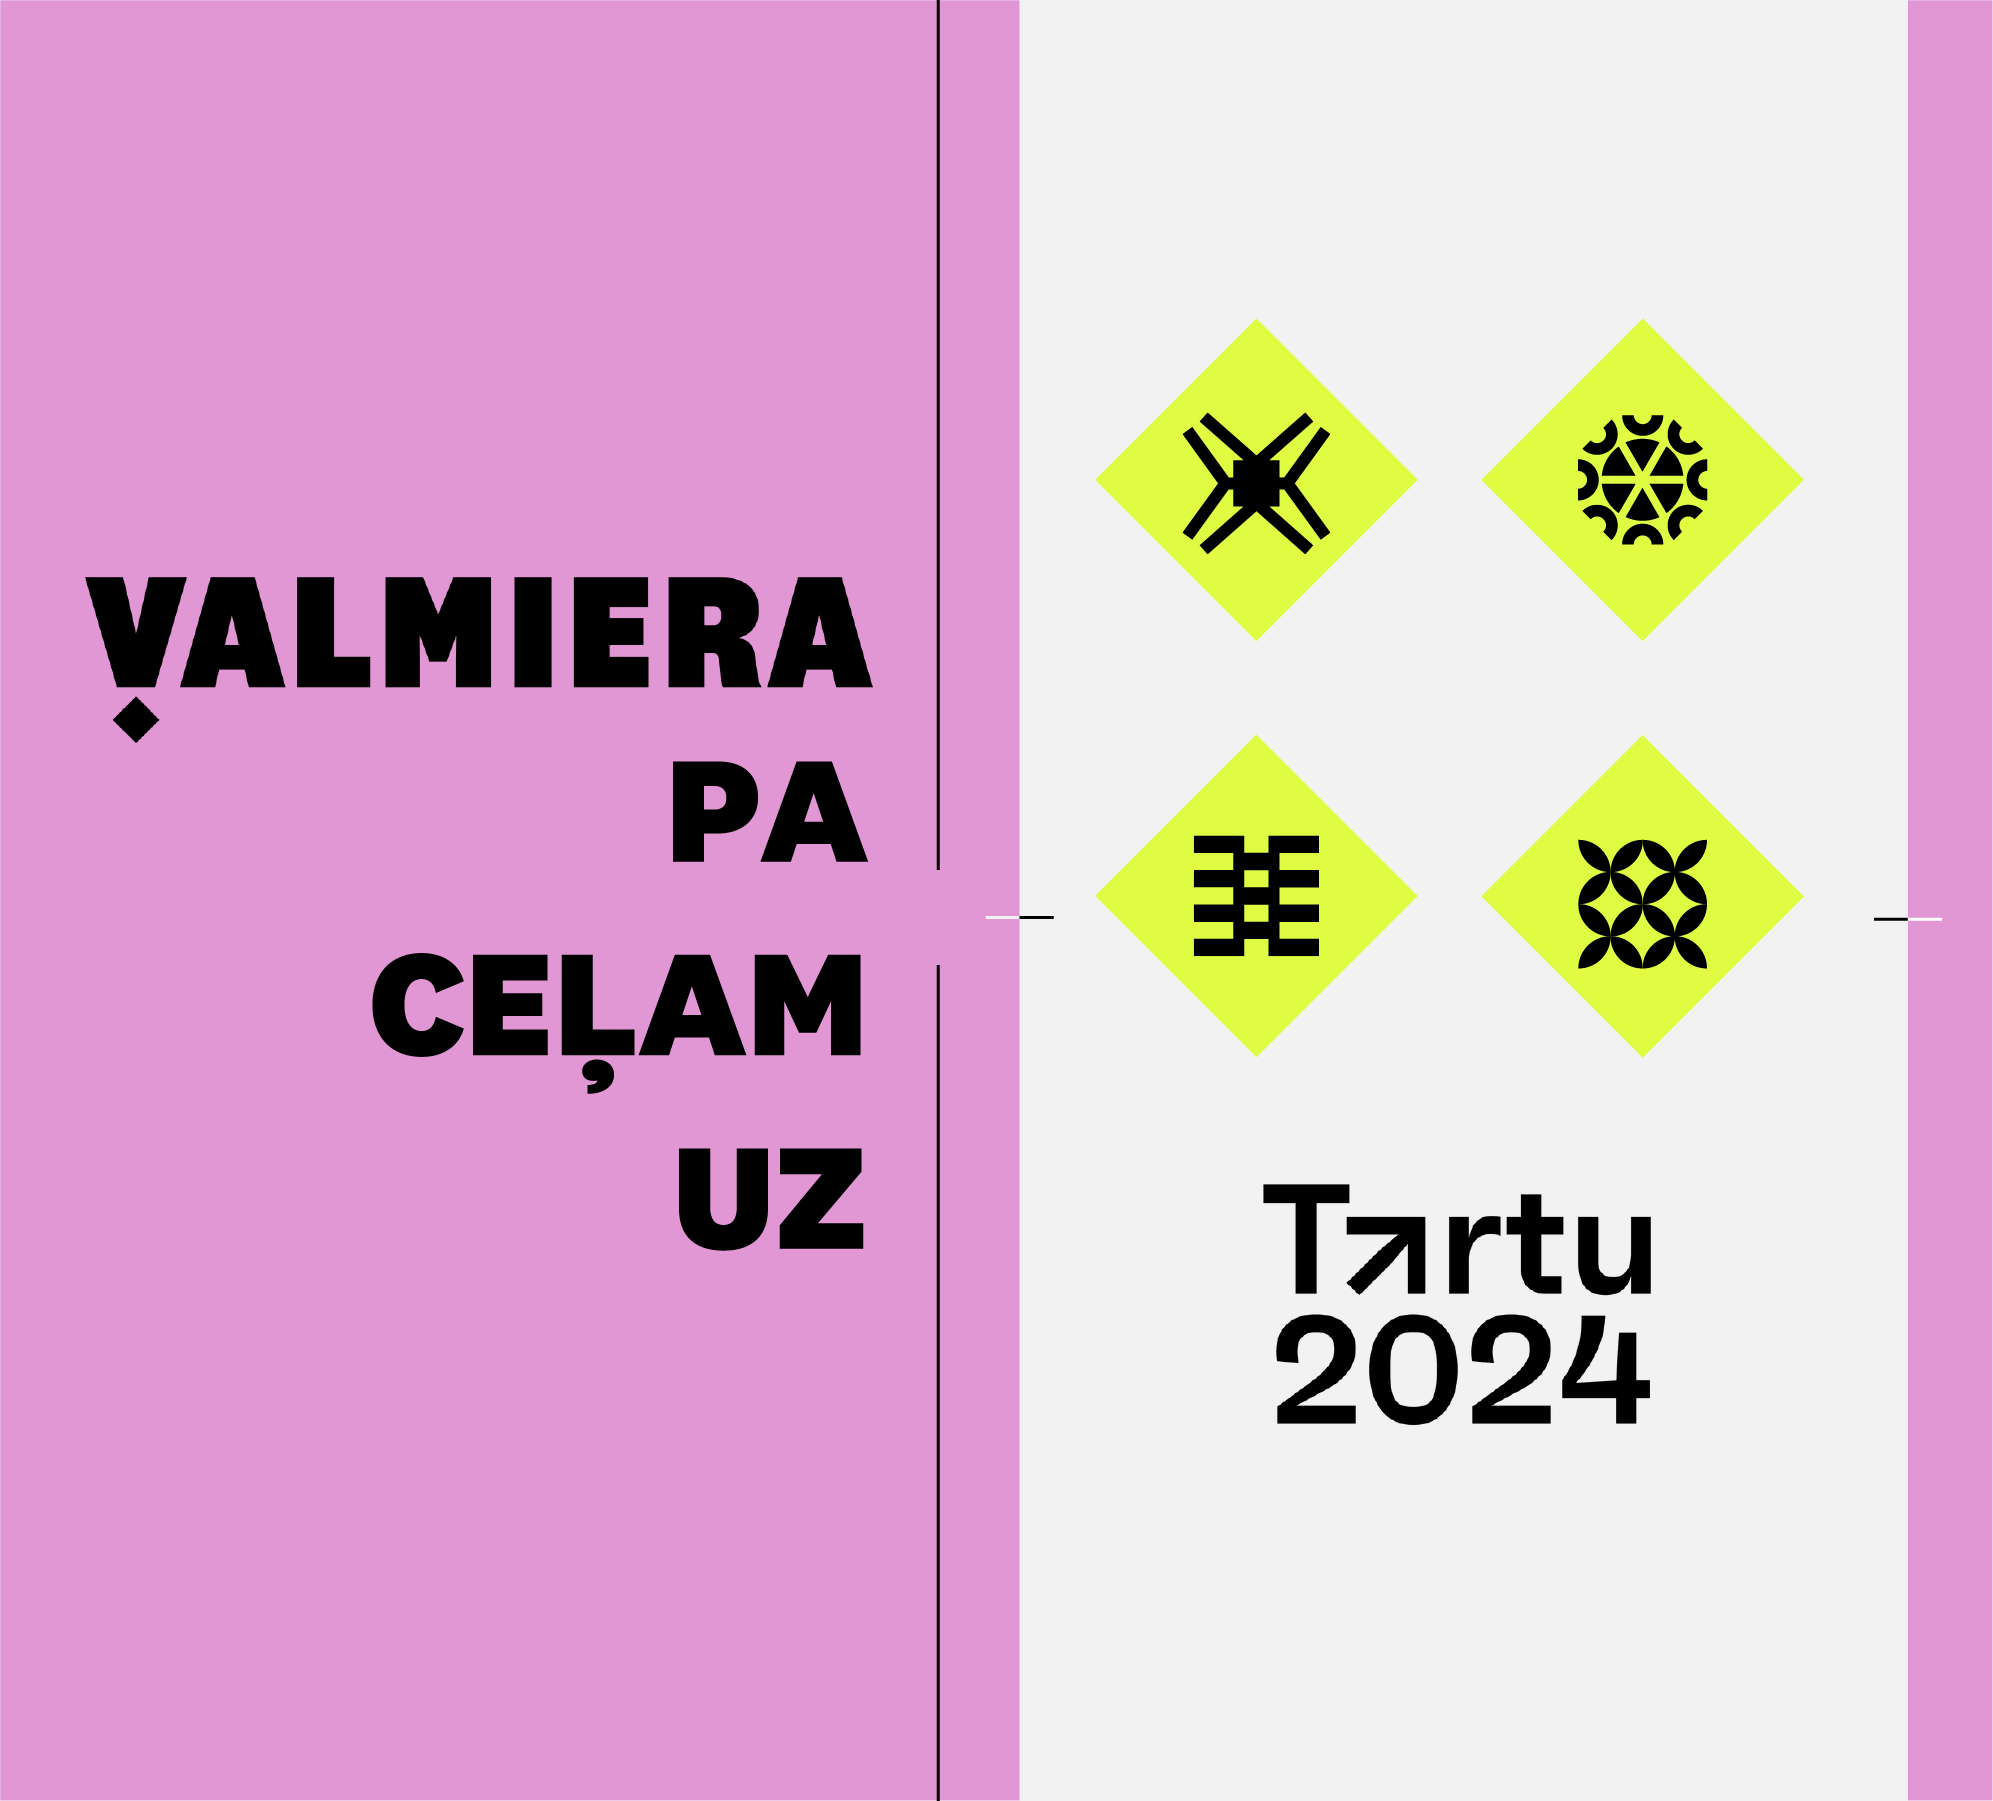 Valmiera ir pa ceļam uz Tartu – Eiropas kultūras galvaspilsētu 2024!